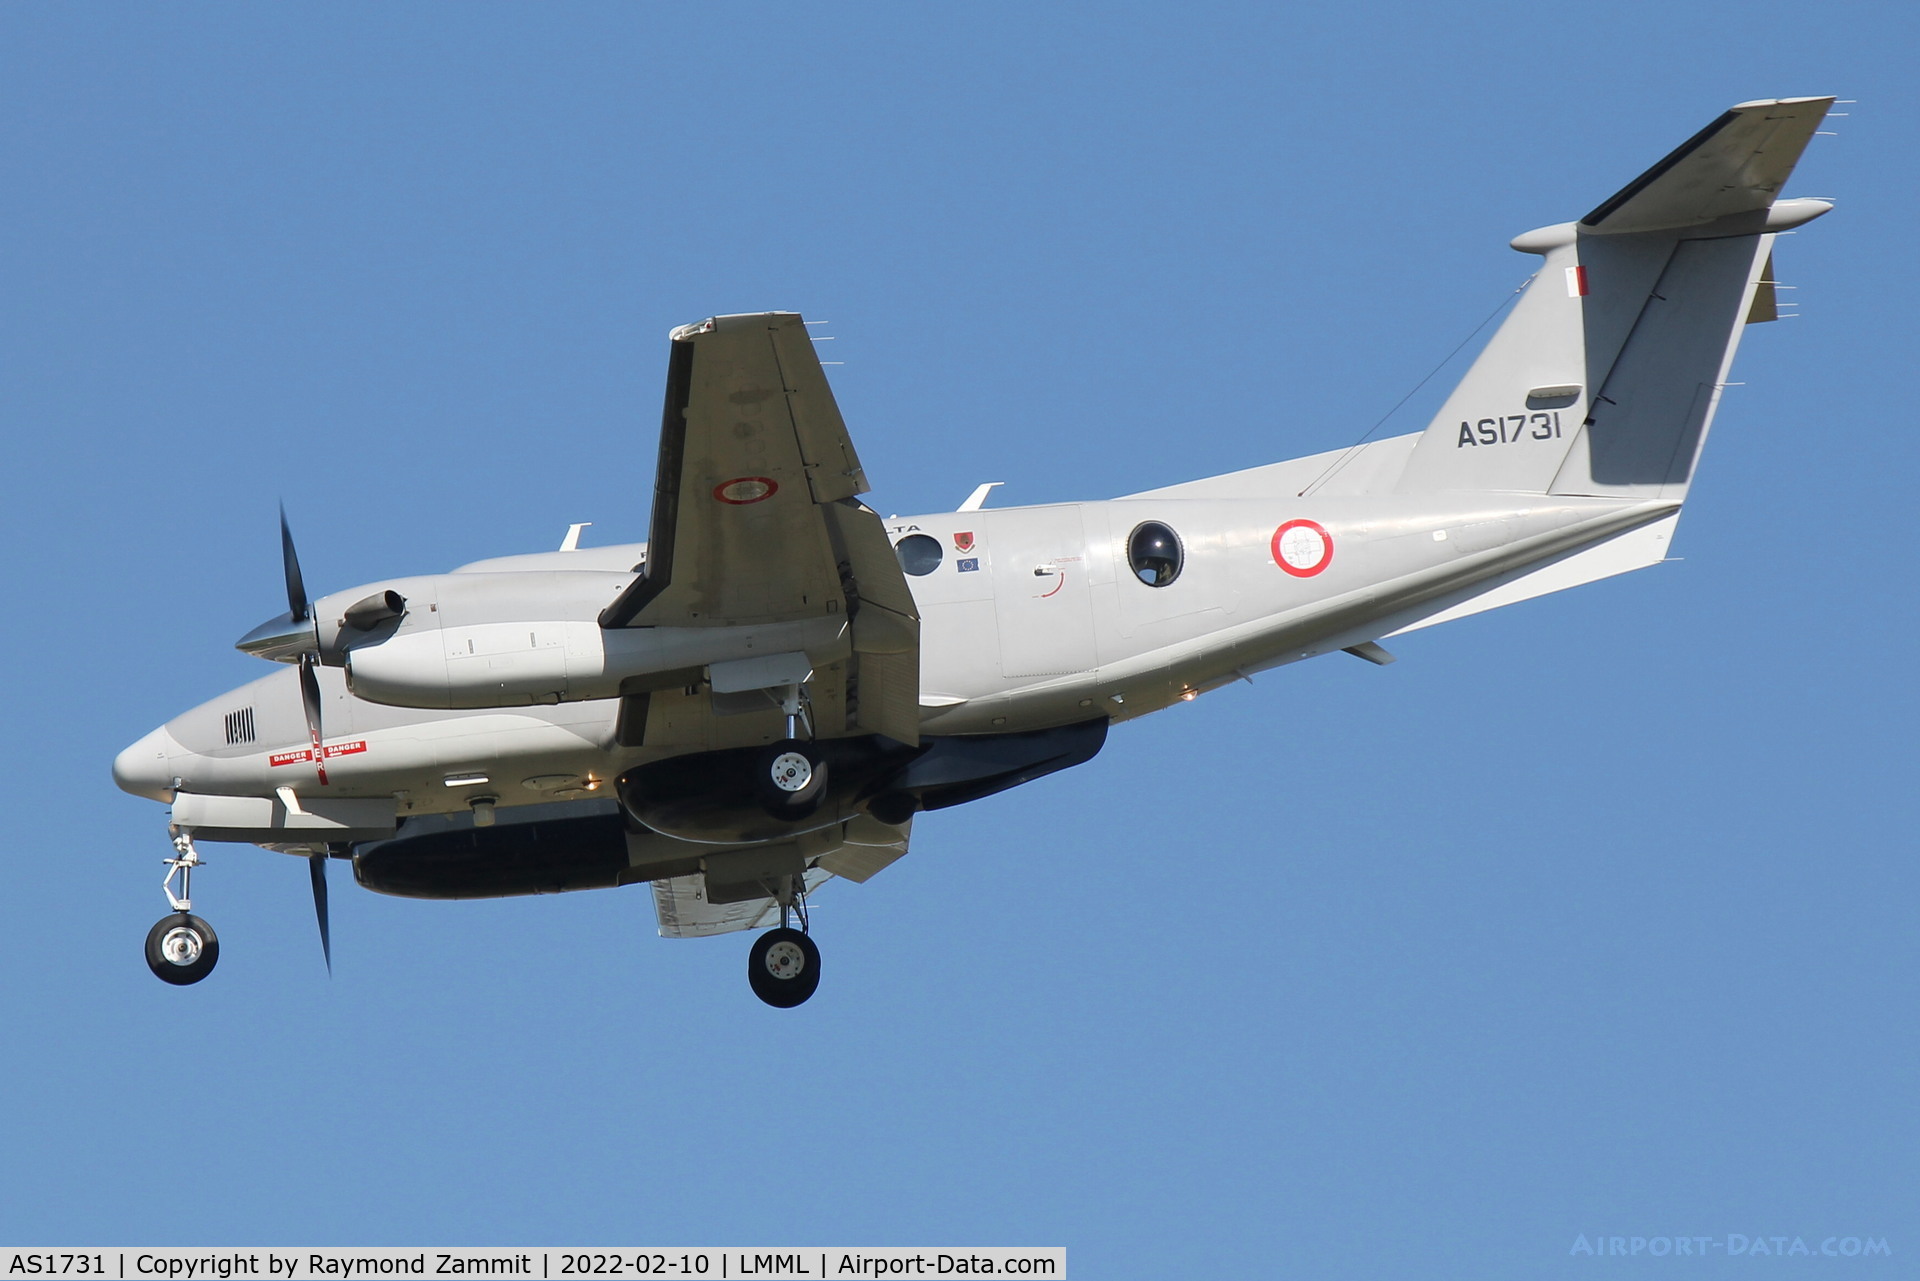 AS1731, 2015 Beechcraft B200GT C/N BY-249, Beechcraft B2900GT AS1731 Armed Forces of Malta